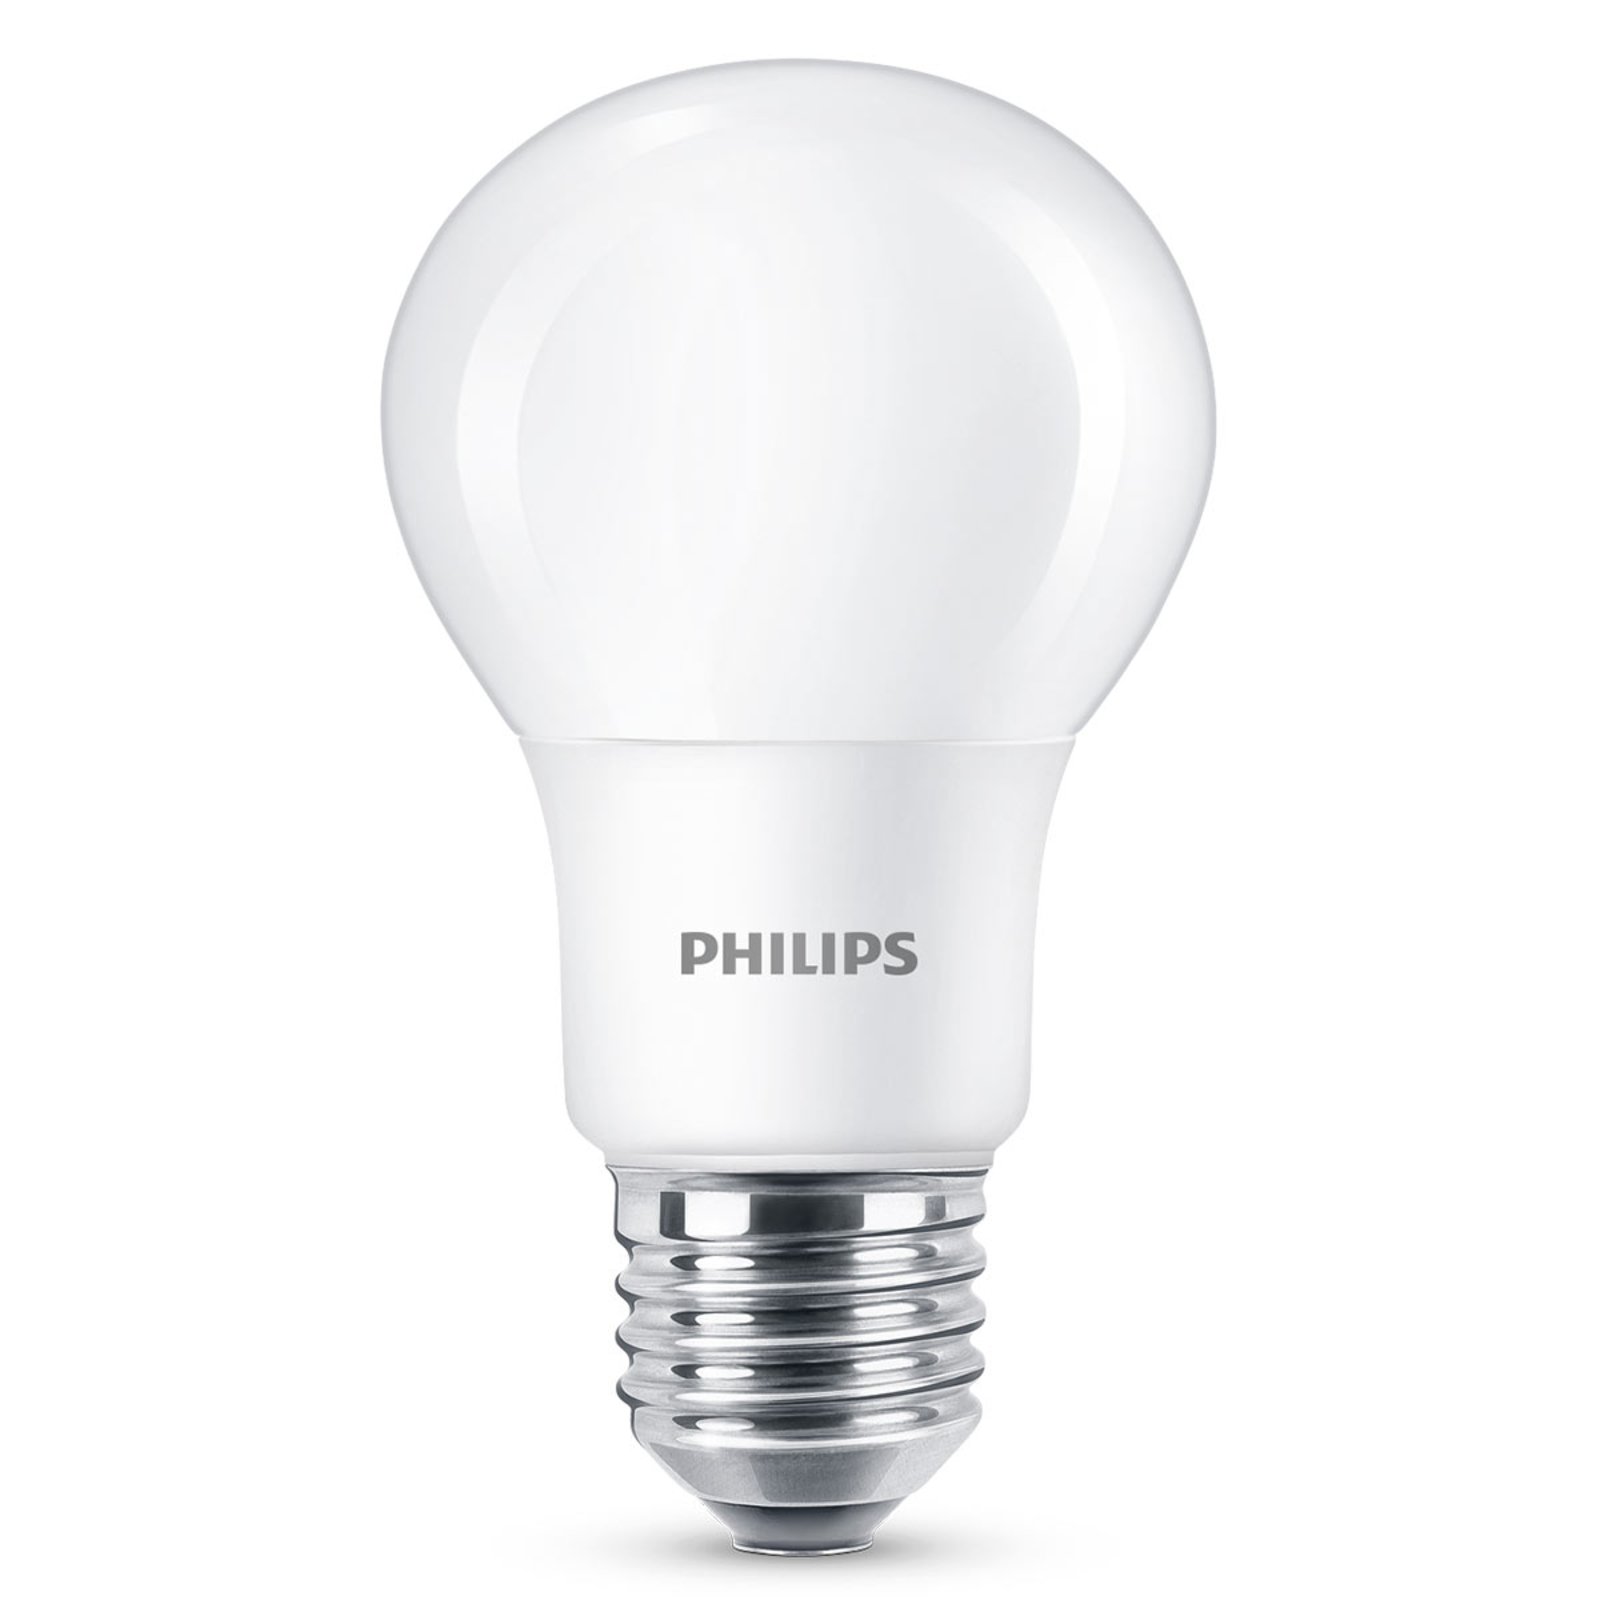 Philips E27 LED lámpa 2,2W meleg fehér, nem dimm.